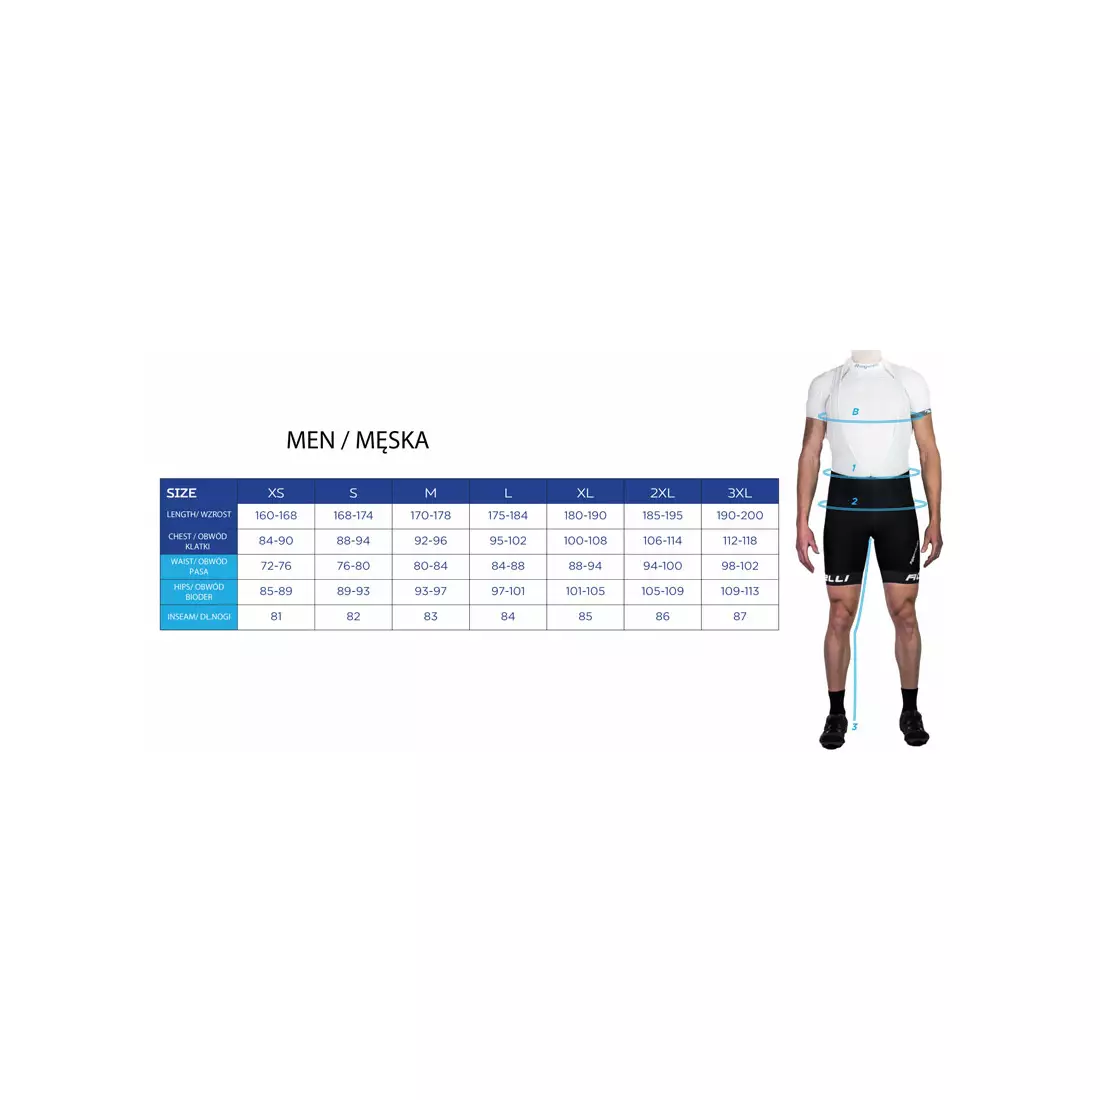 ROGELLI RUN BASIC - Tricou de alergare pentru bărbați, 800.254 - portocaliu fluor